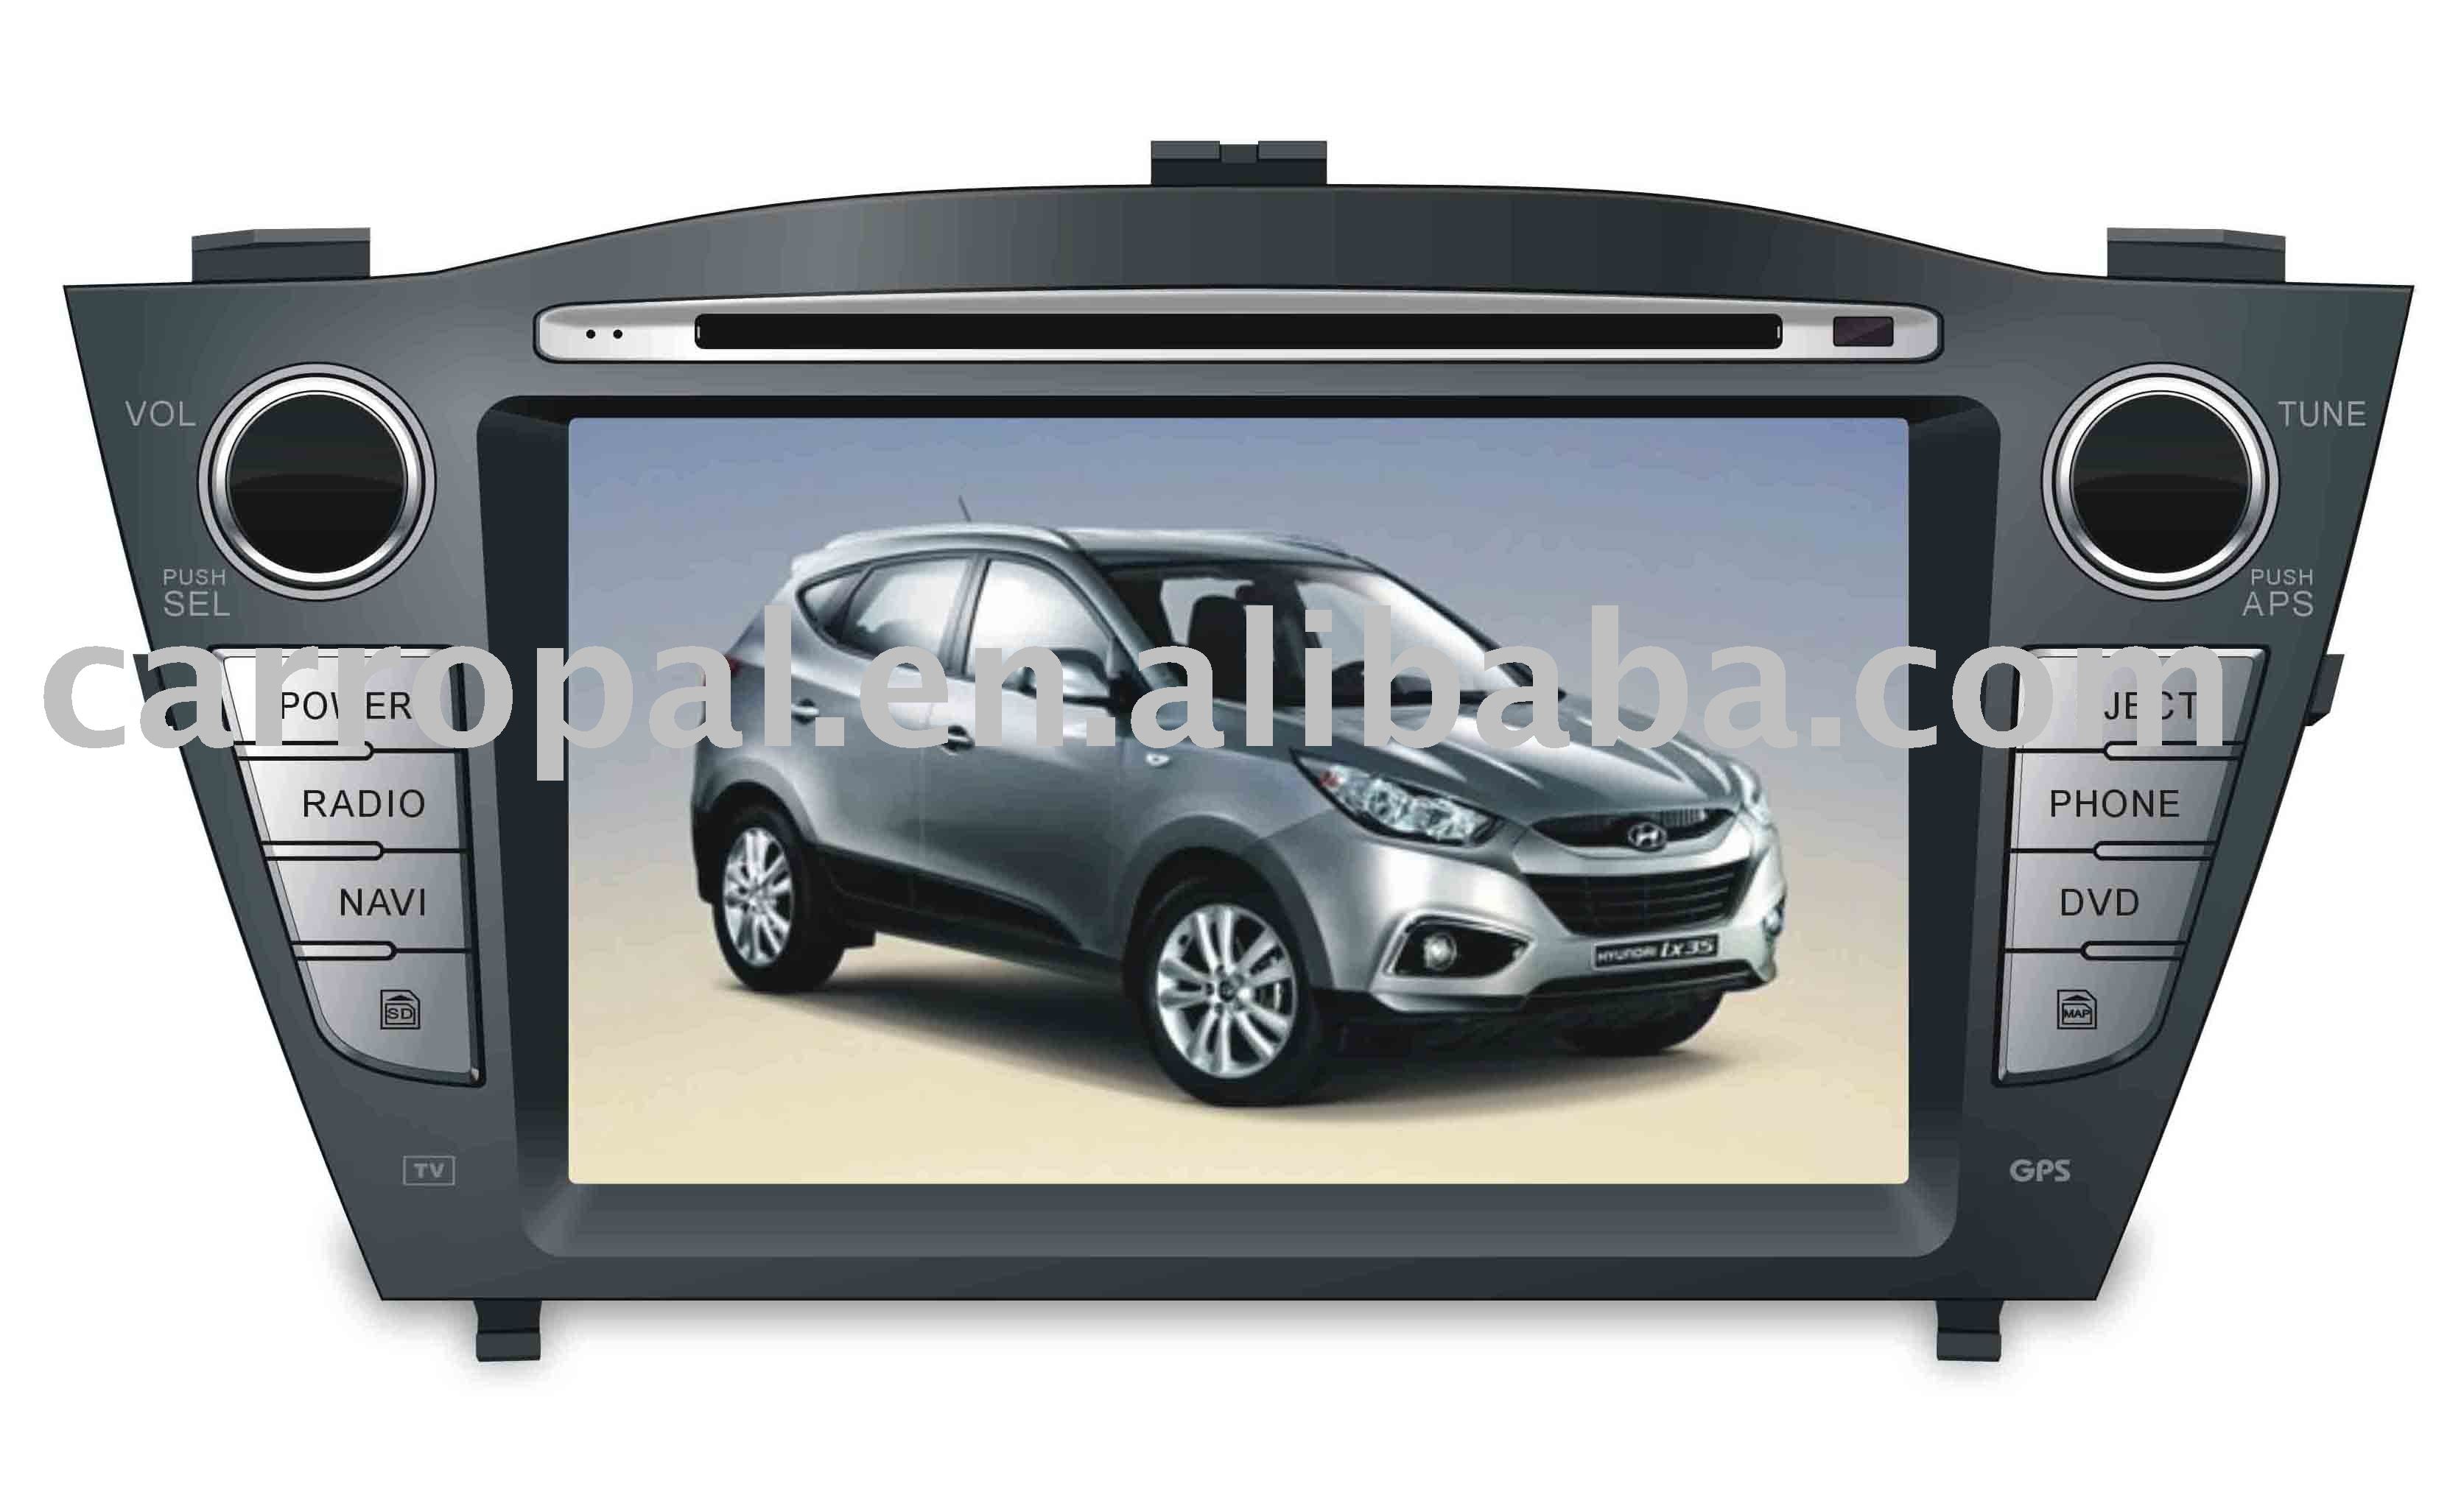 See larger image: Hyundai IX35 car dvd. Add to My Favorites